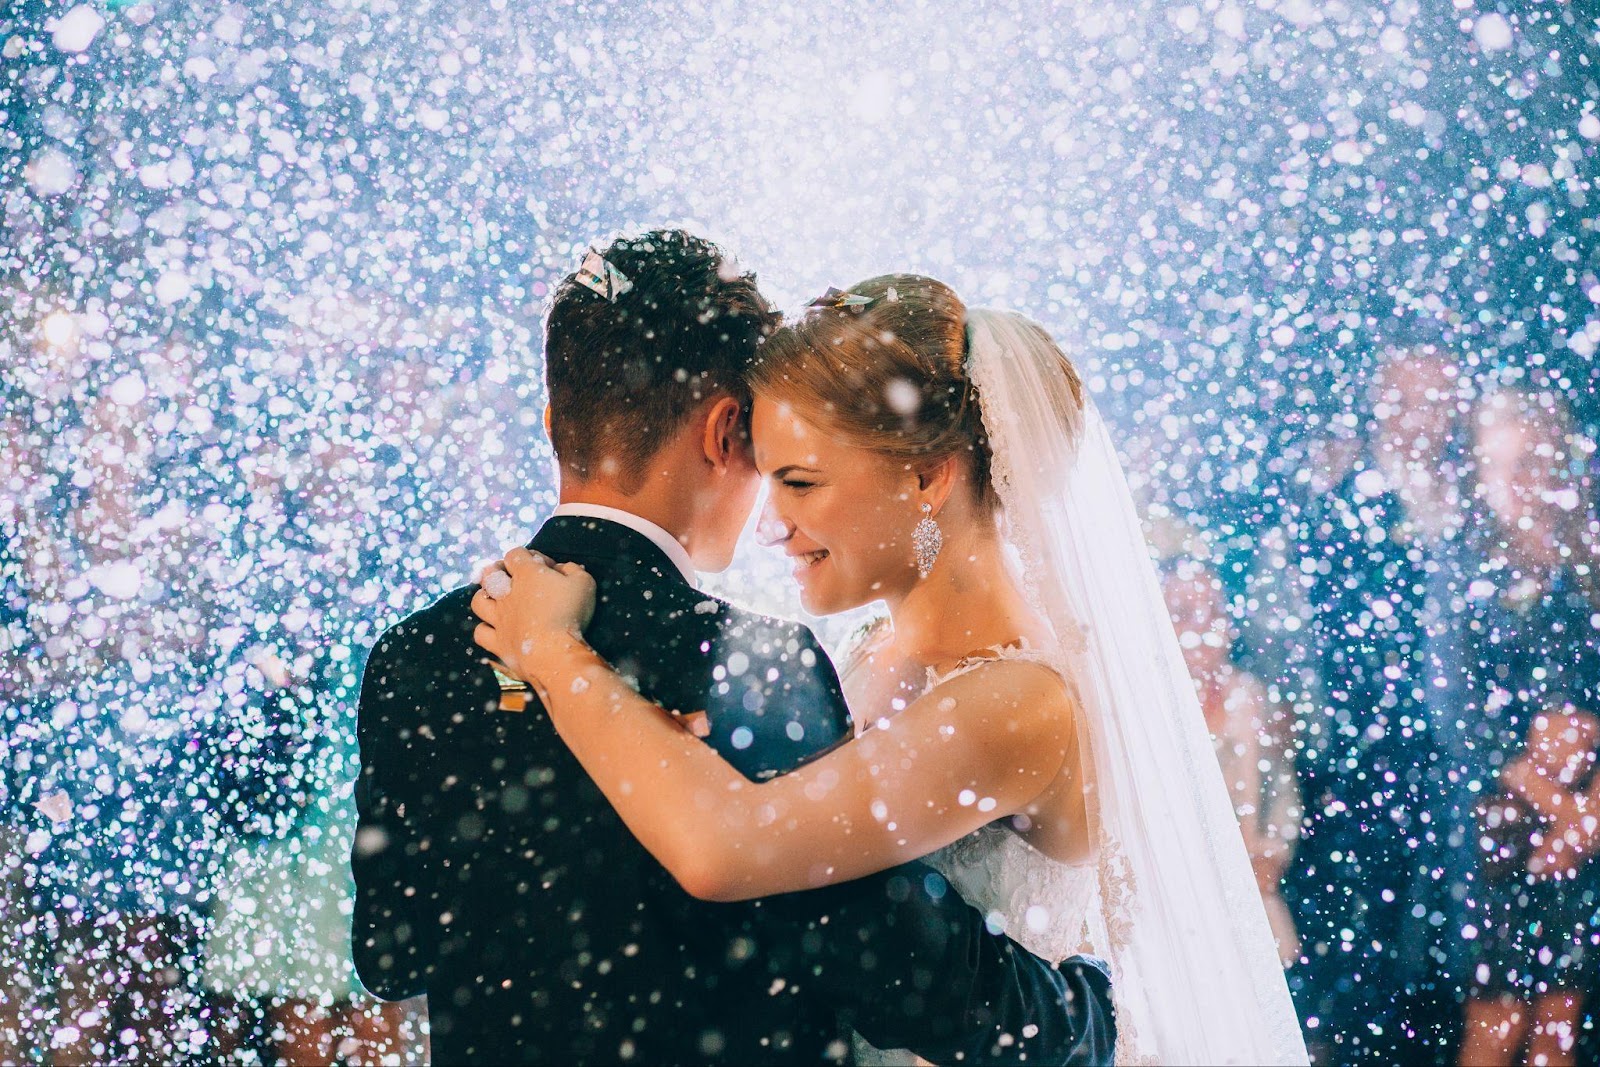 15 wedding myths